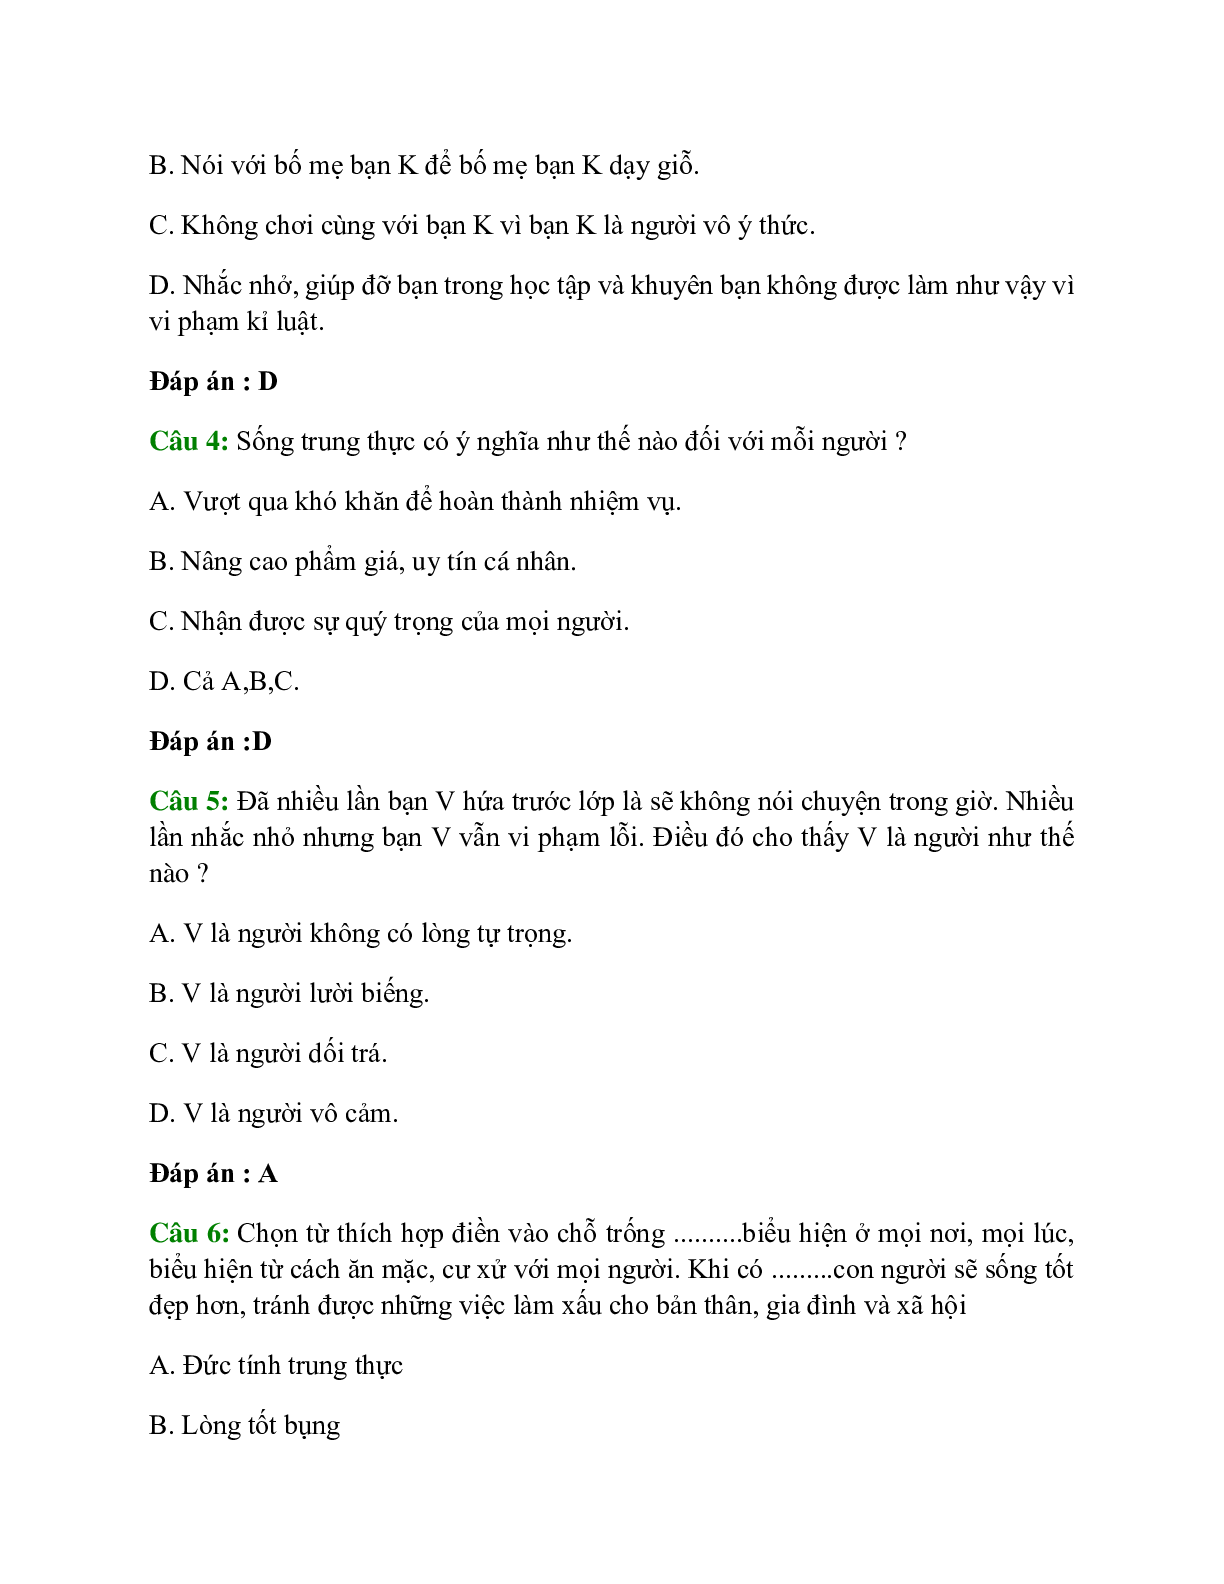 Trắc nghiệm GDCD 7 Bài 3 có đáp án: Tự trọng (trang 2)